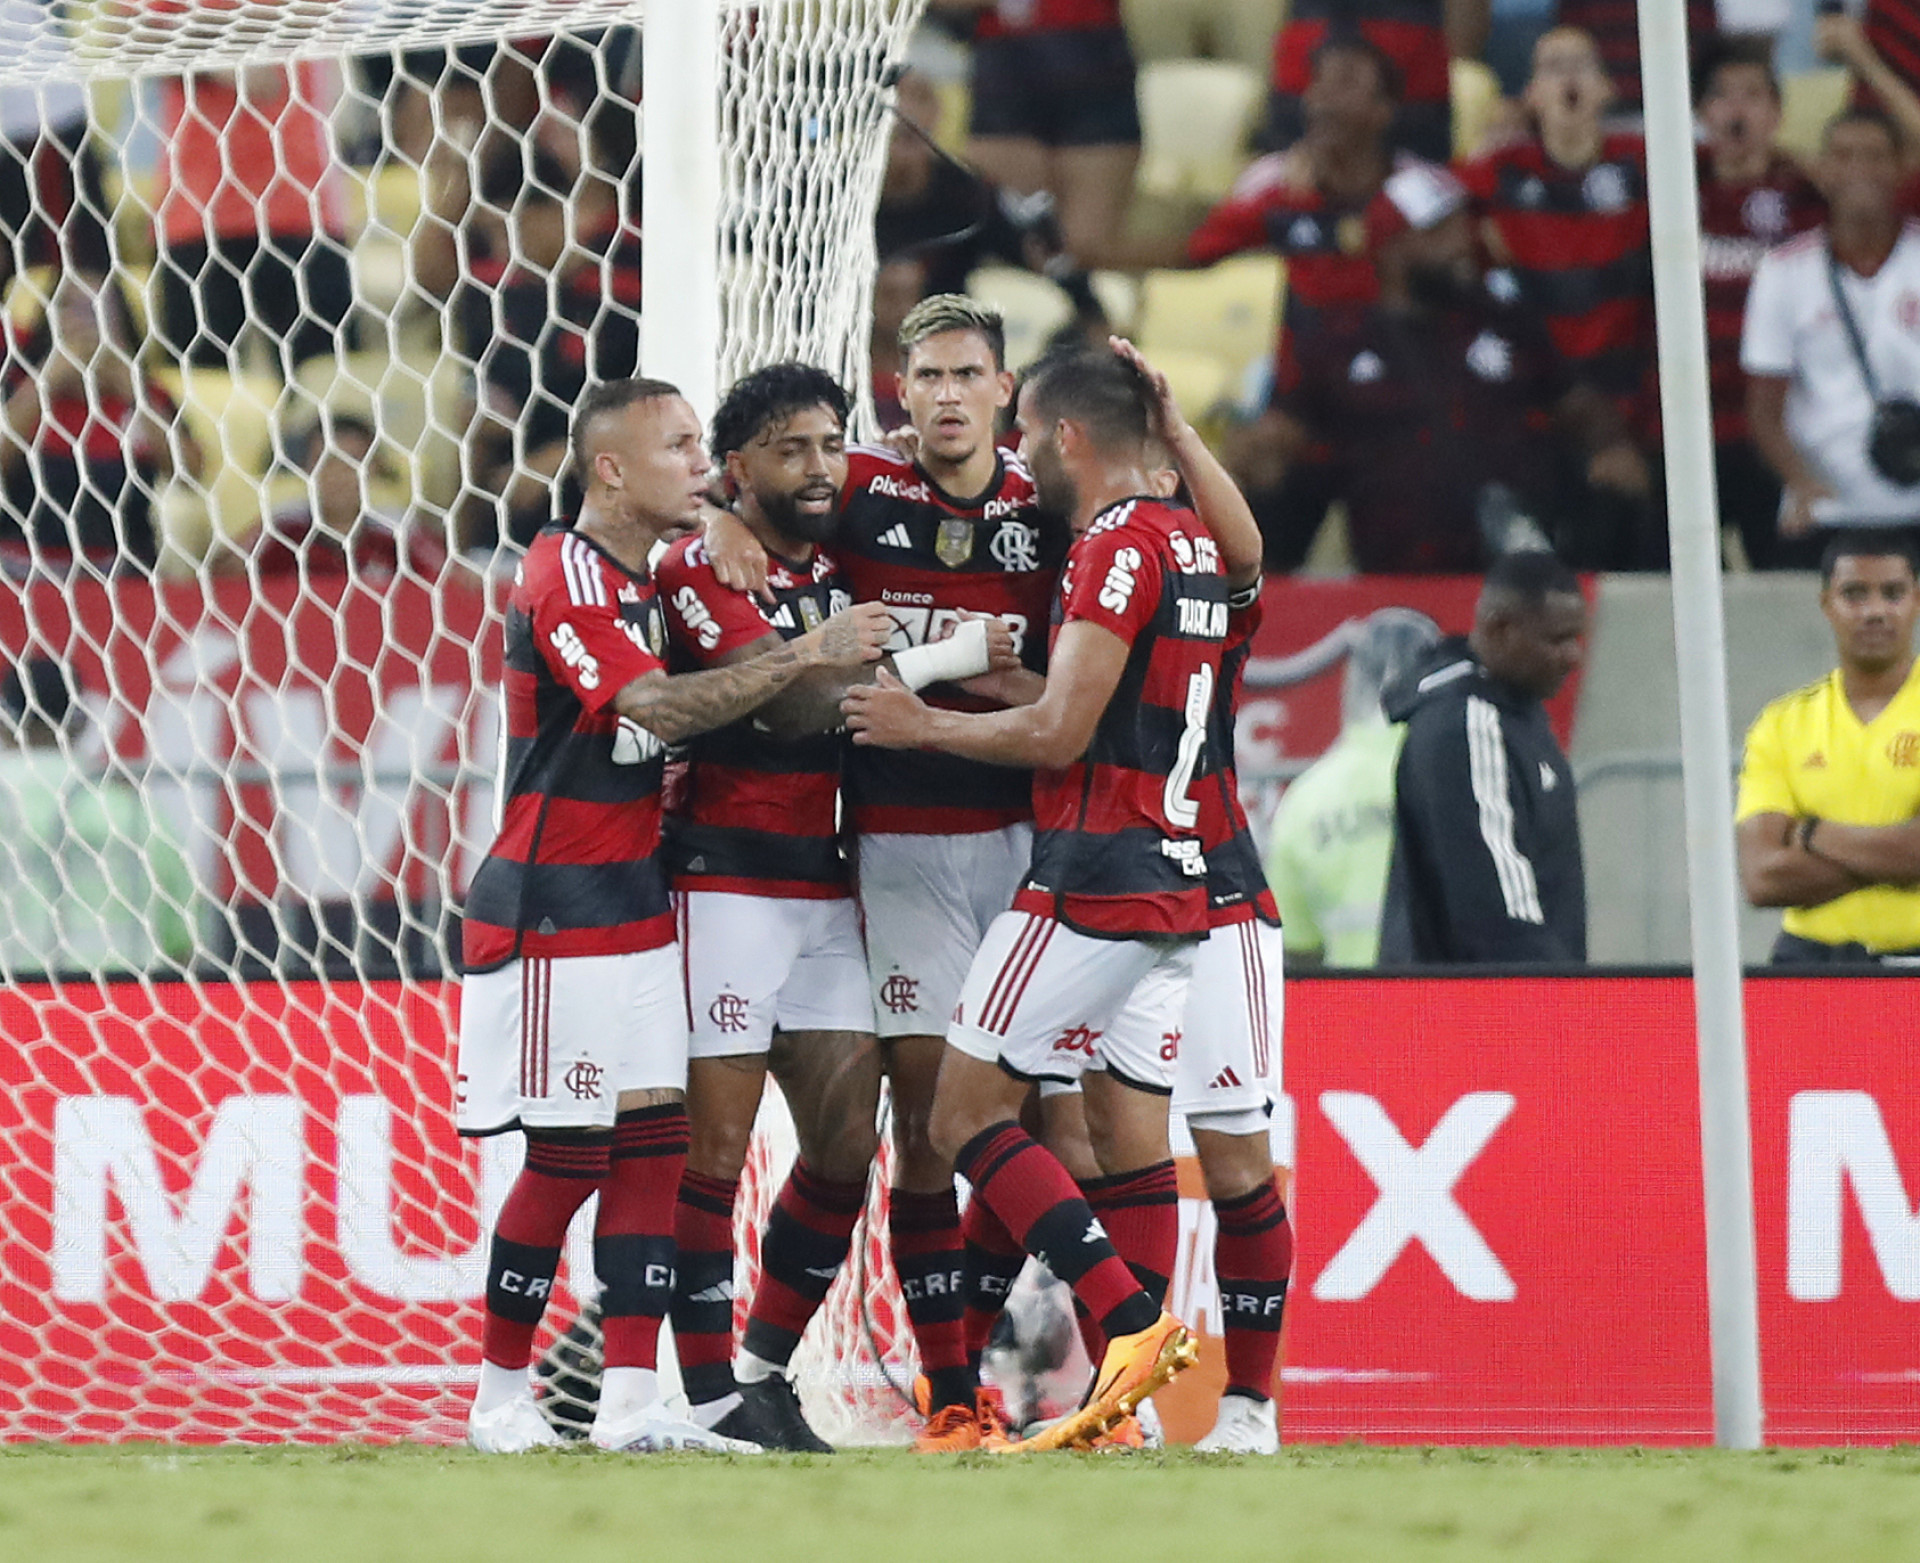 Jogadores do Flamengo comemoram gol na partida sobre o Maringá - MARCELO DE JESUS/MDJPHOTOS